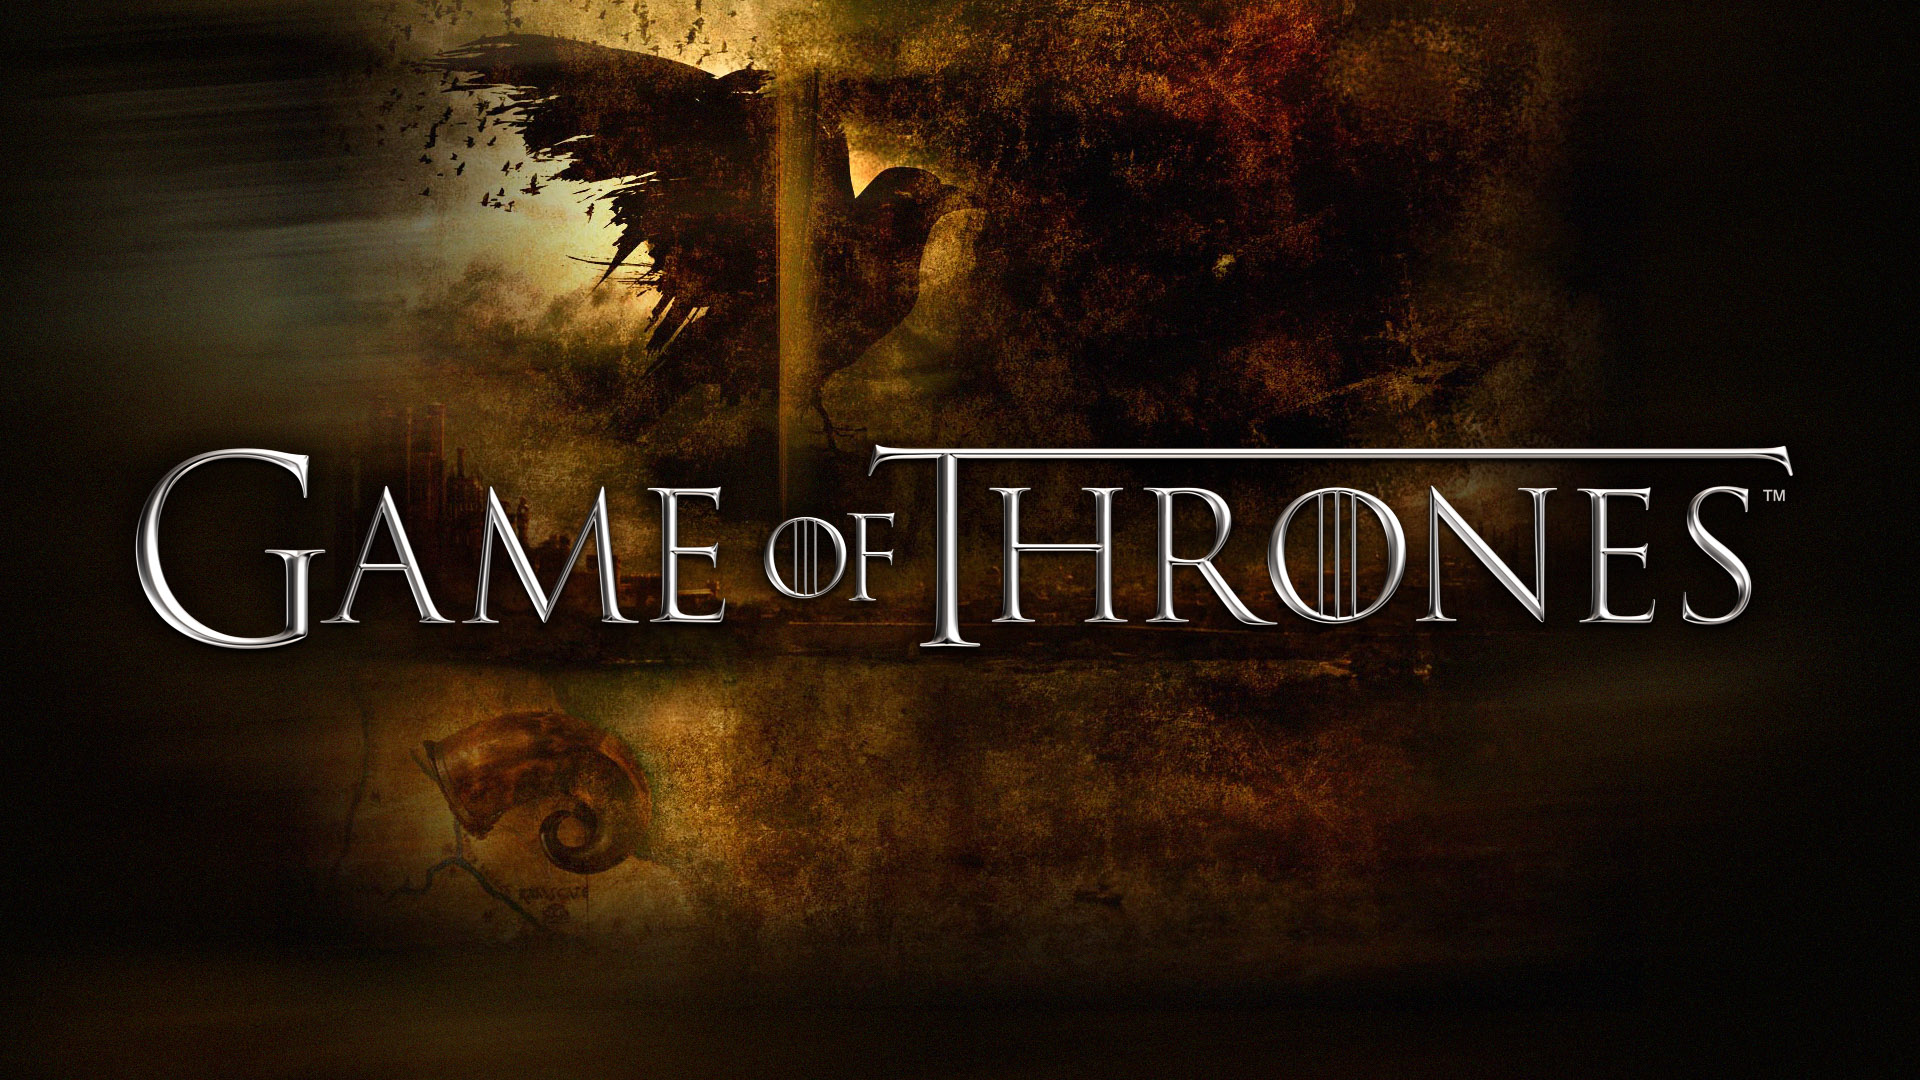 Game of Thrones wallpaper HD free download | PixelsTalk.Net